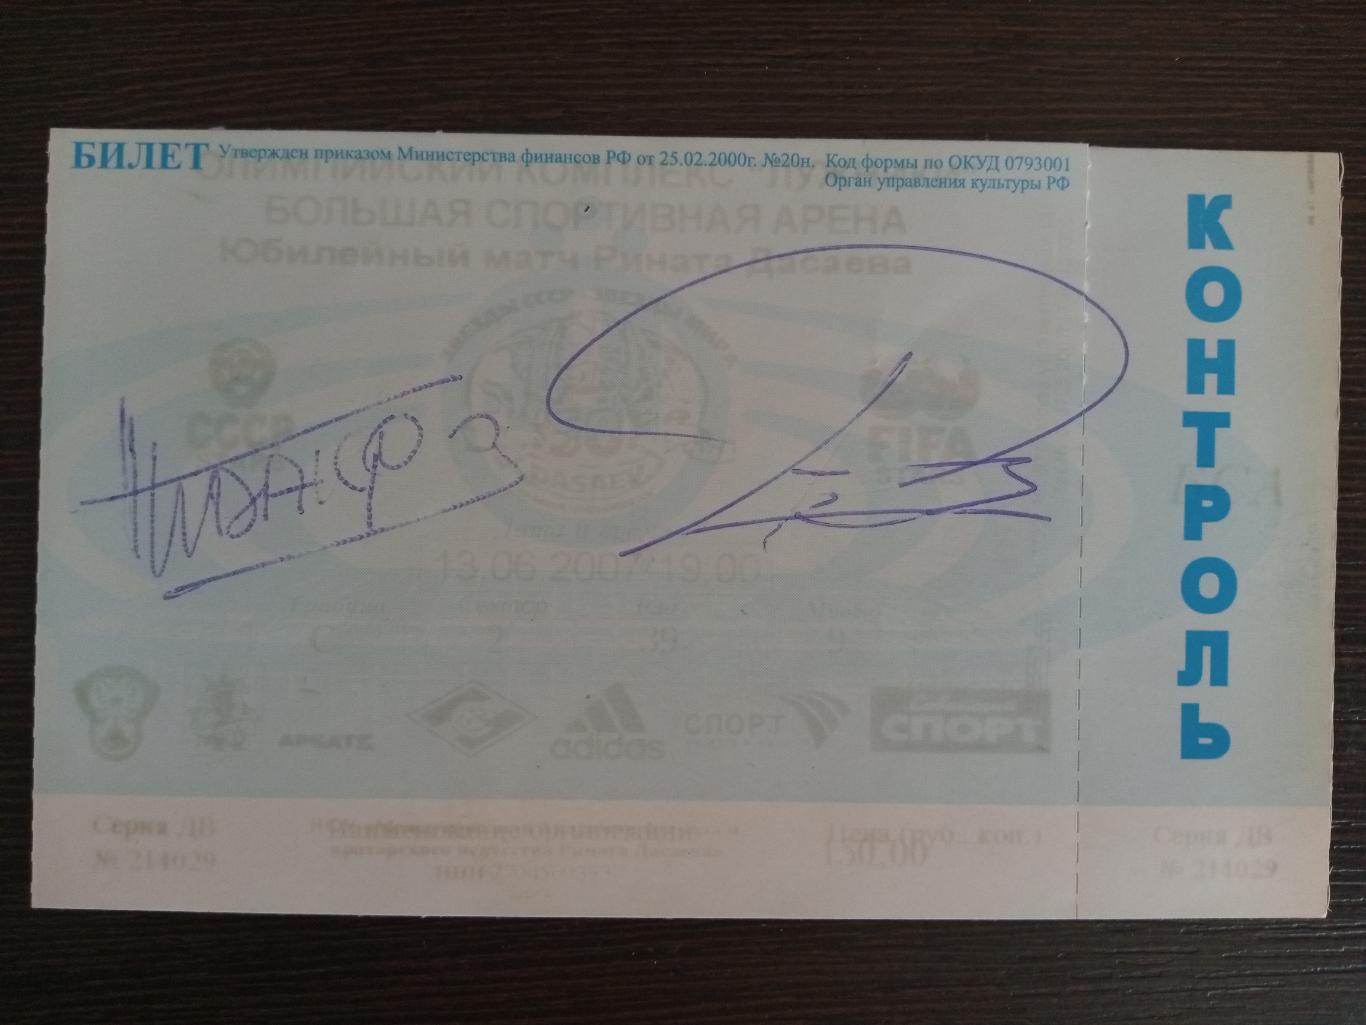 Билет на матч-юбилей Дасаева с автографами Андони Субисаррета и Мишель Идальго